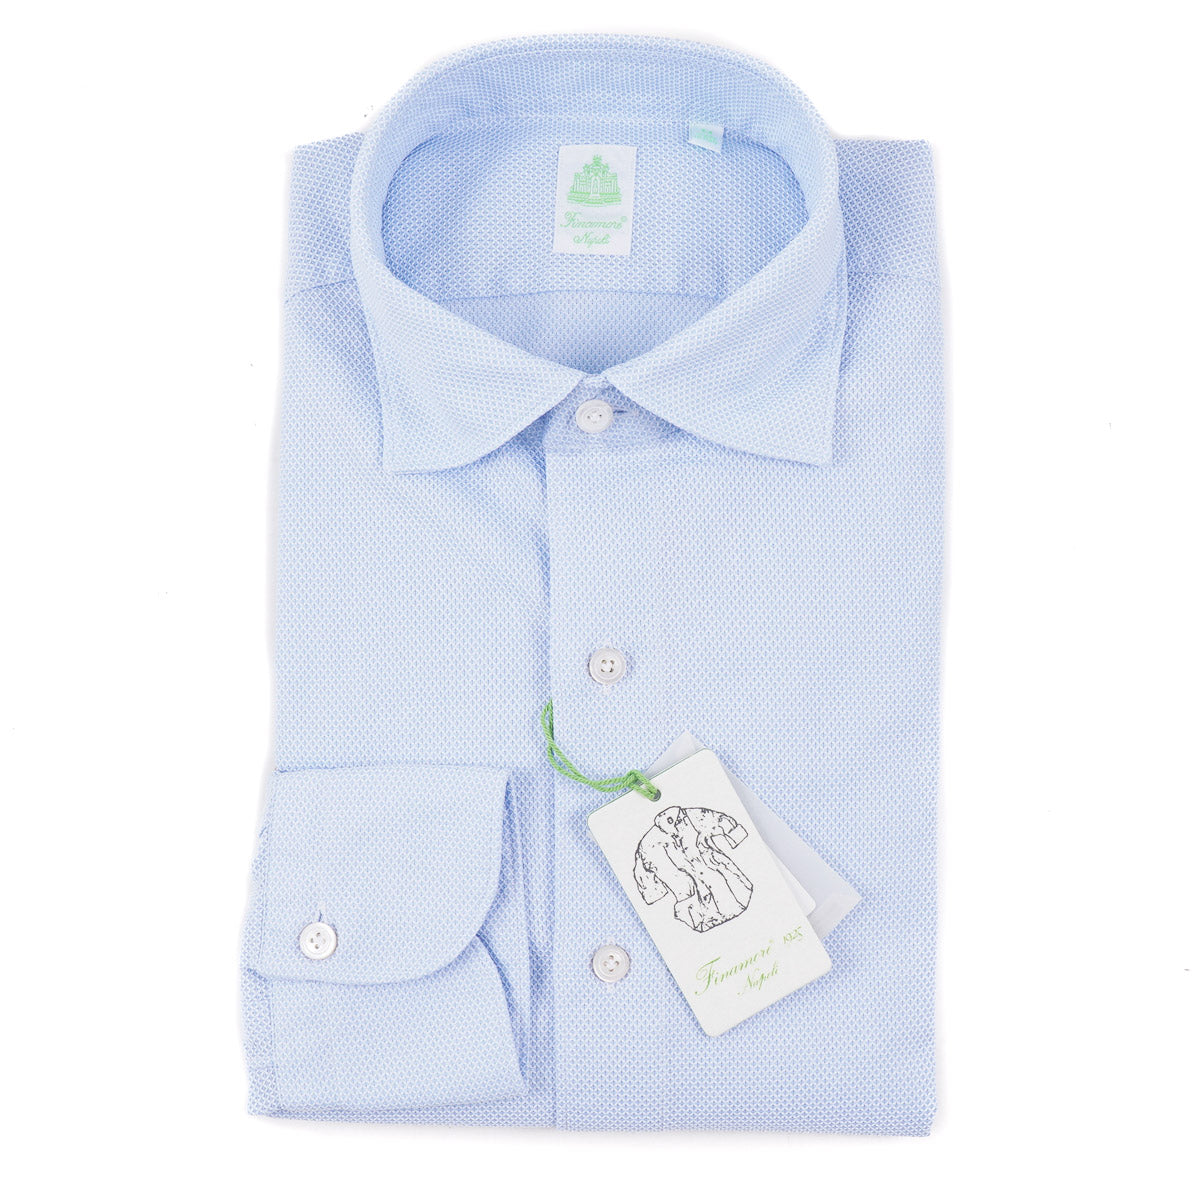 Finamore Regular-Fit Woven Cotton Shirt - Top Shelf Apparel